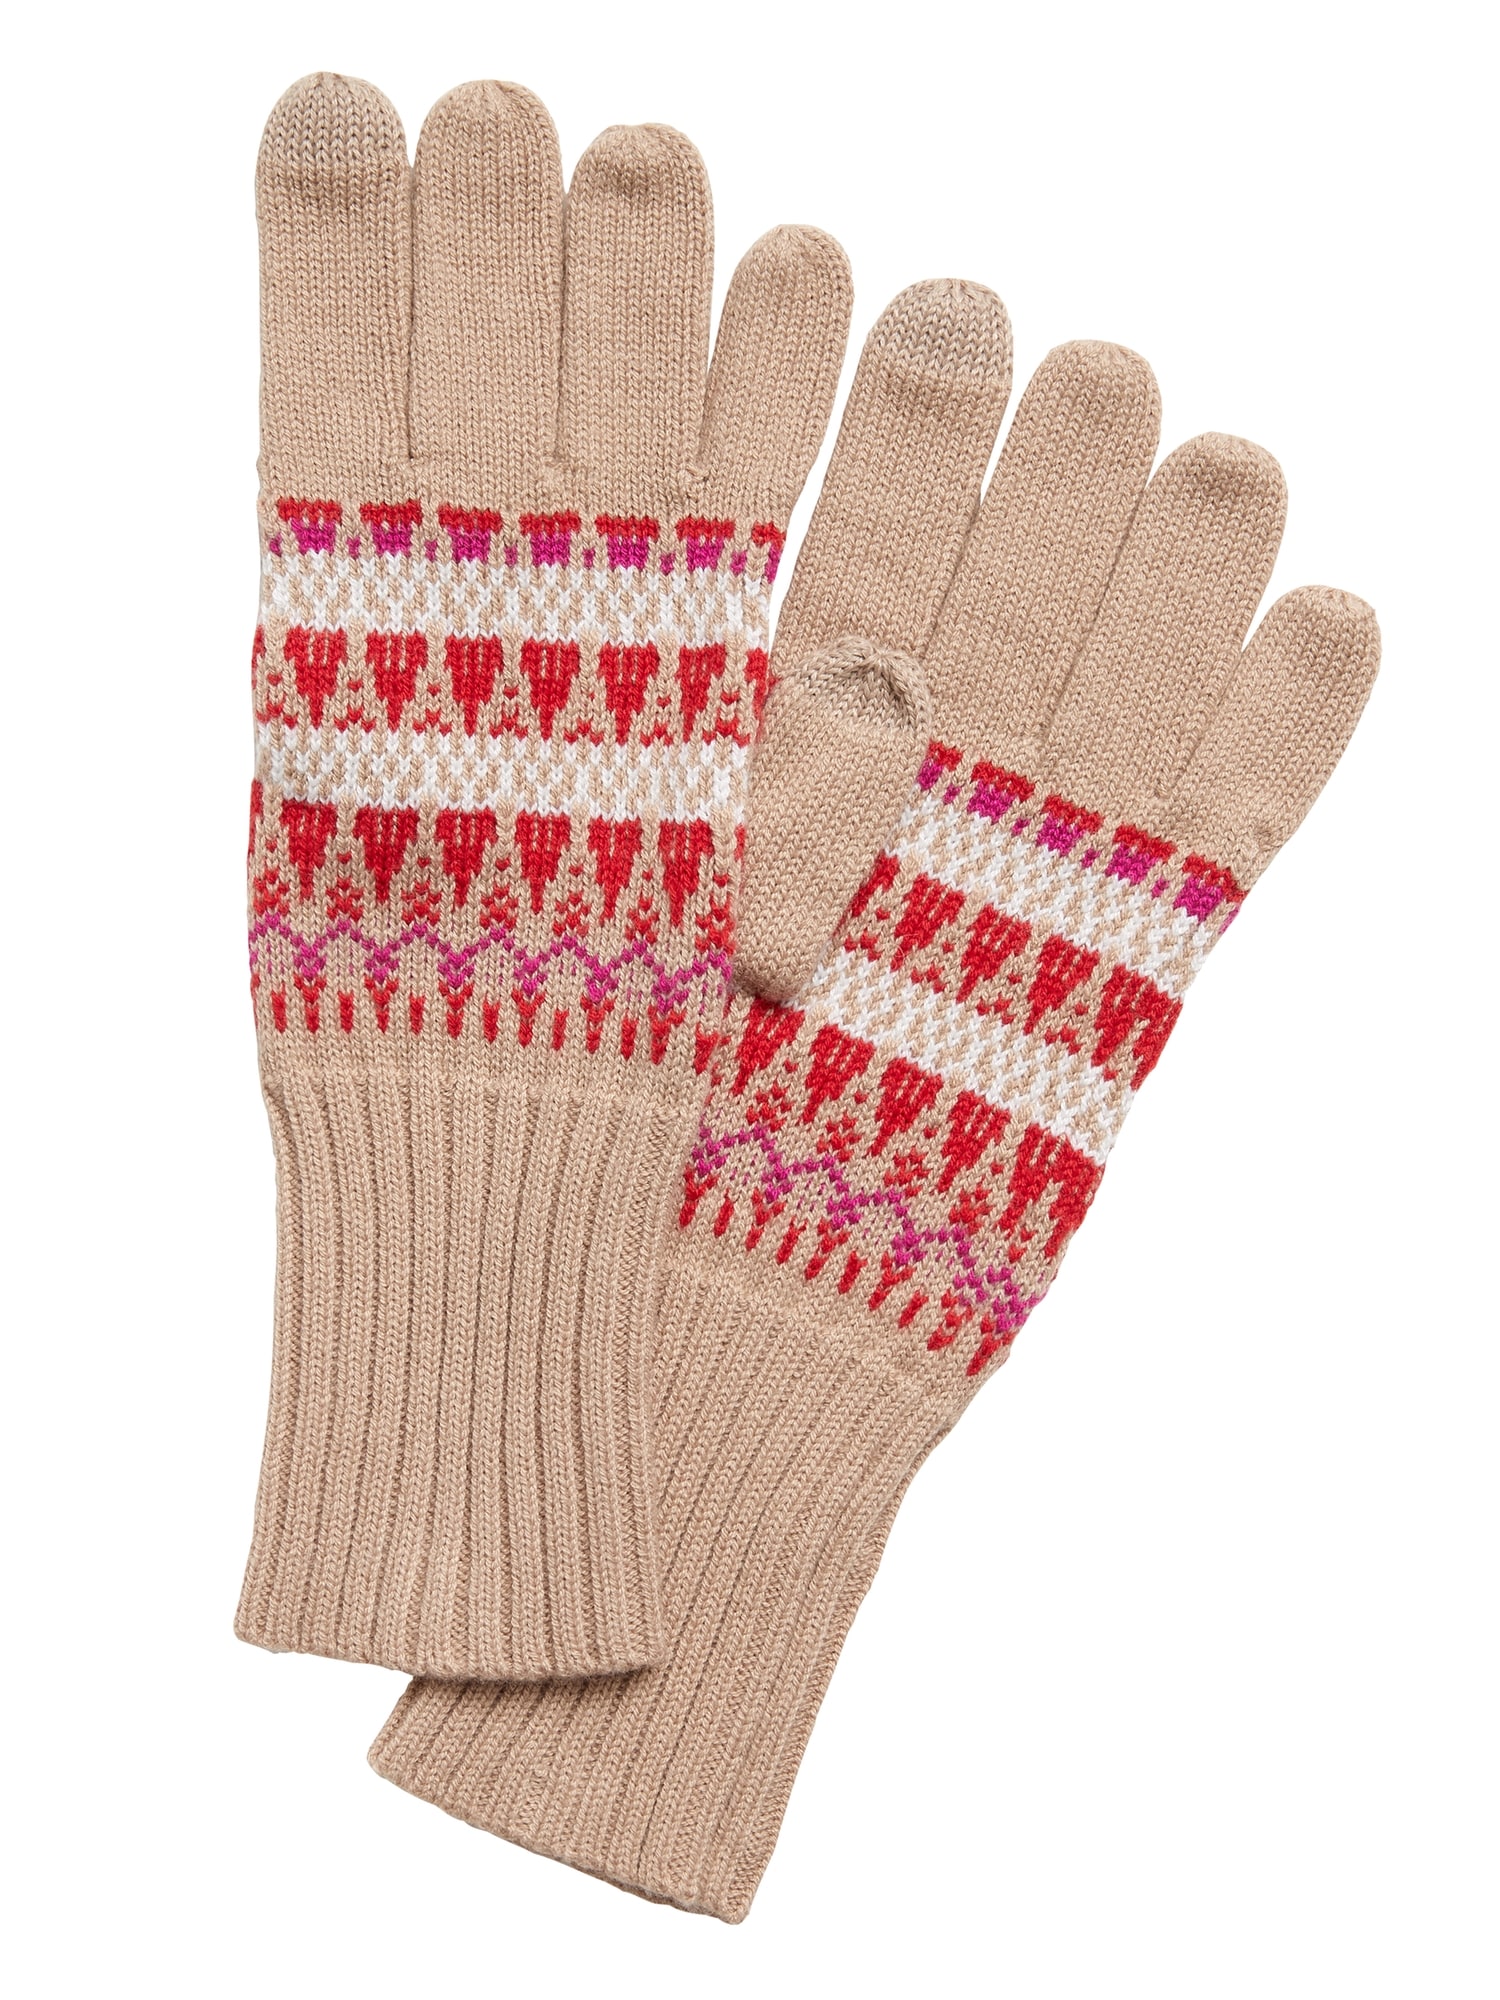 Fair Isle Knit Gloves